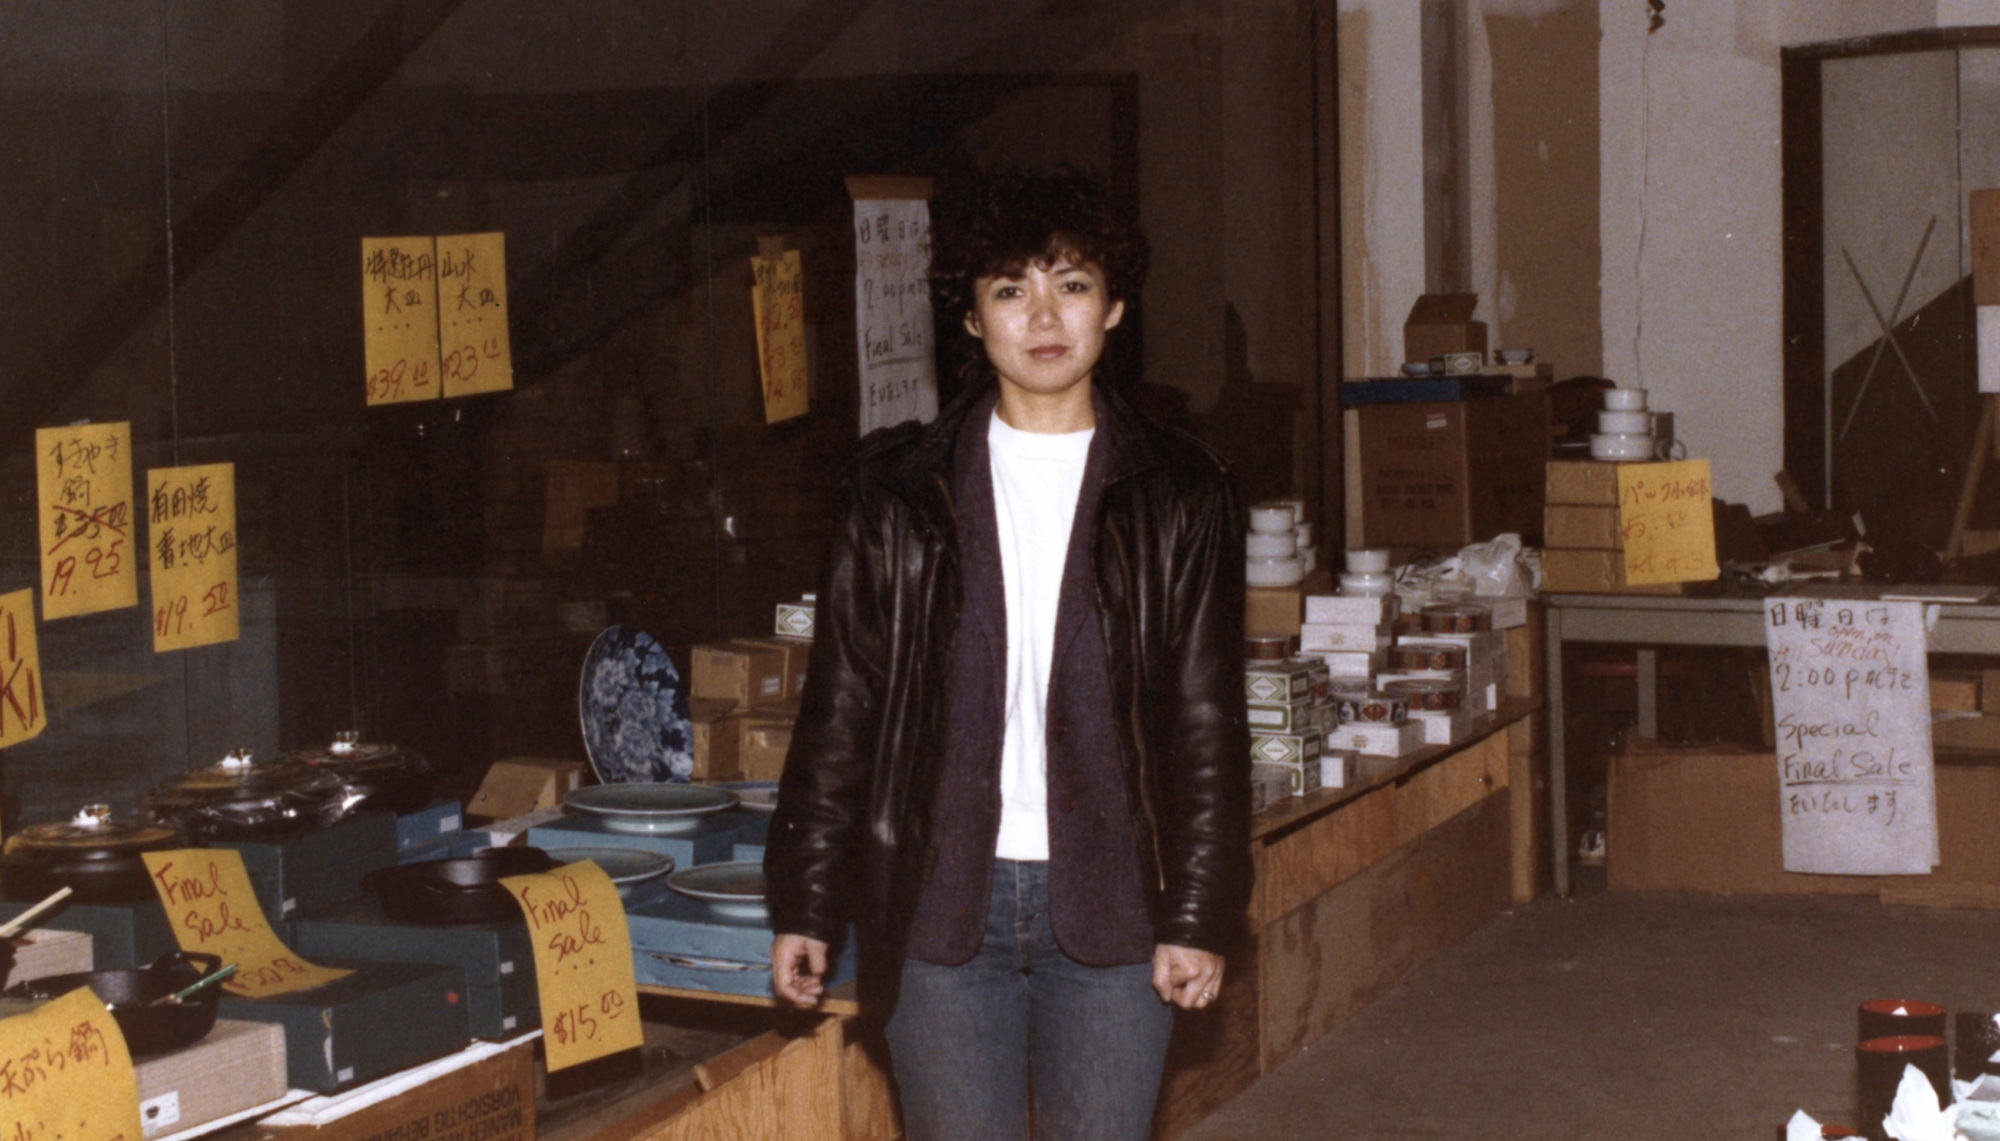 Saori Kawano in 1982.